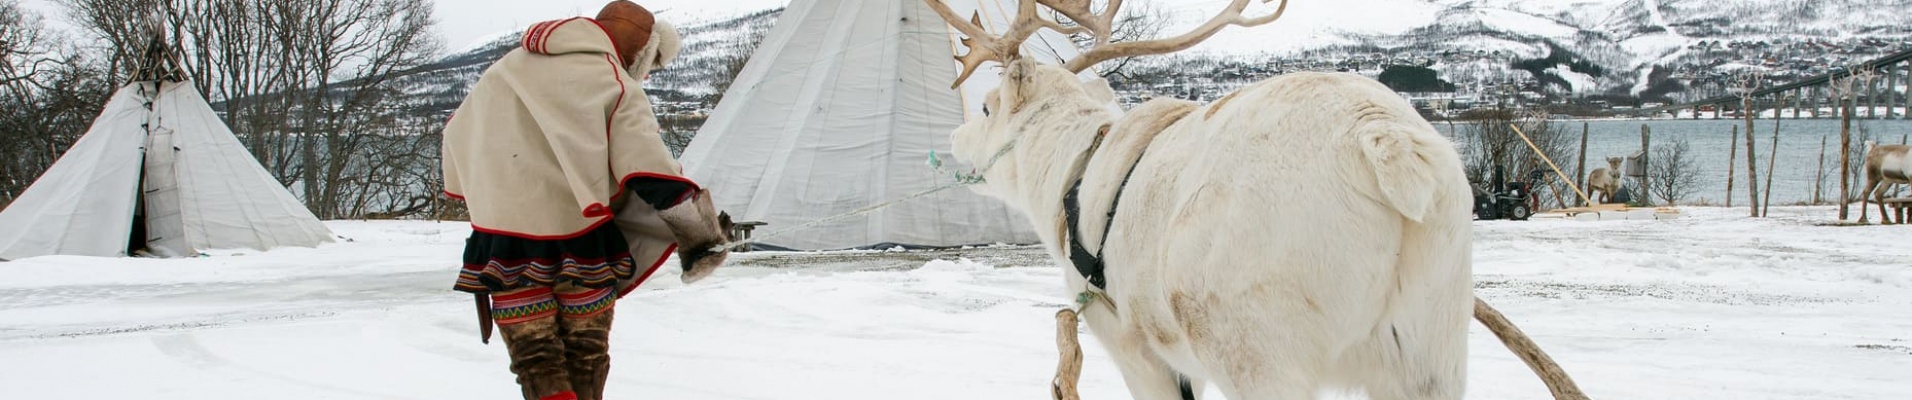 Sami en habit traditionnel avec un renne tirant un traineau